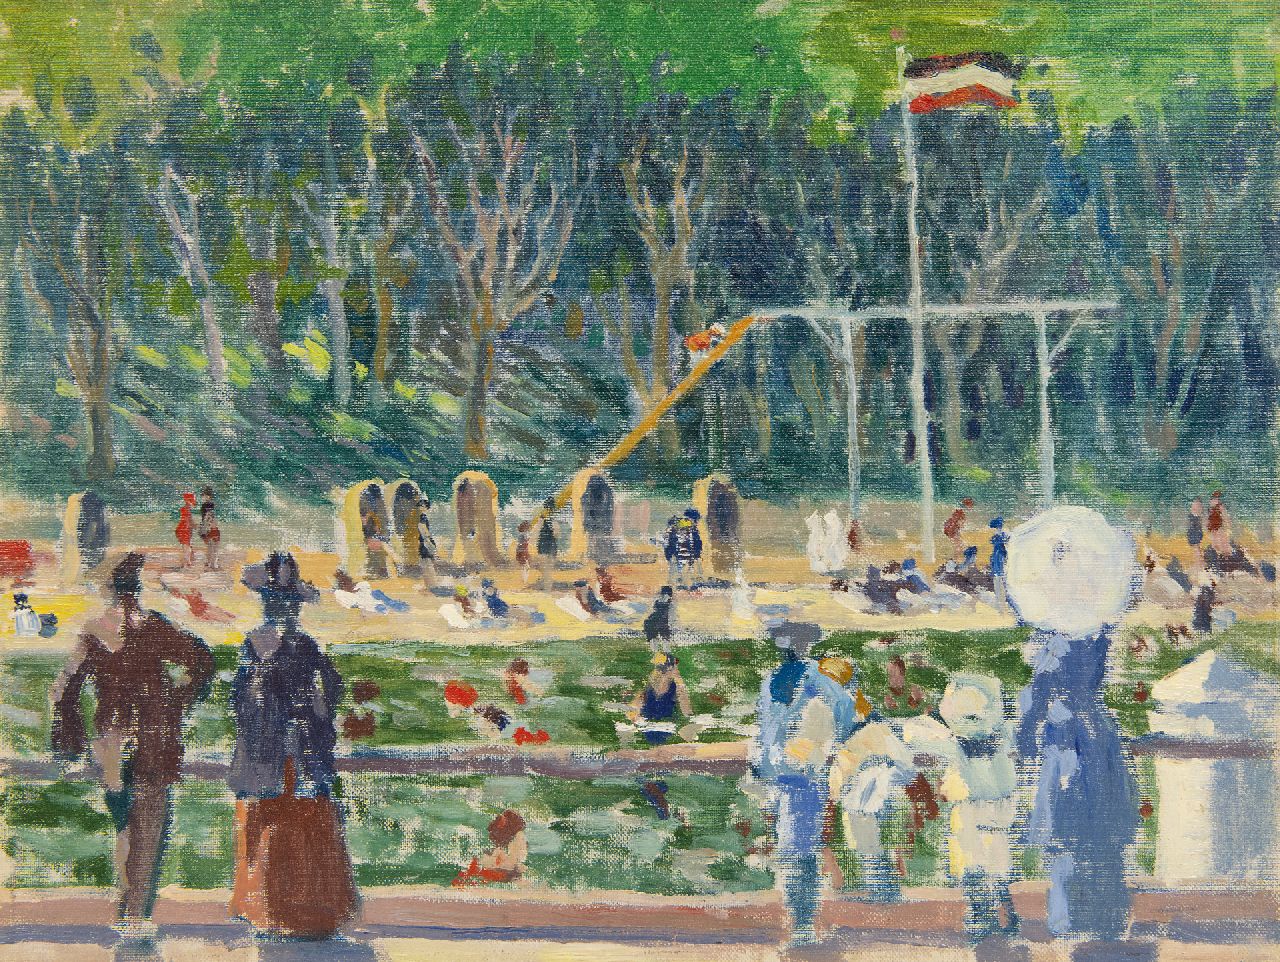 Bloos R.W.  | 'Richard' Willi Bloos | Gemälde zum Verkauf angeboten | Sonniger Tag im Strandbad, Öl auf Leinwand Malereifaser 32,0 x 42,0 cm